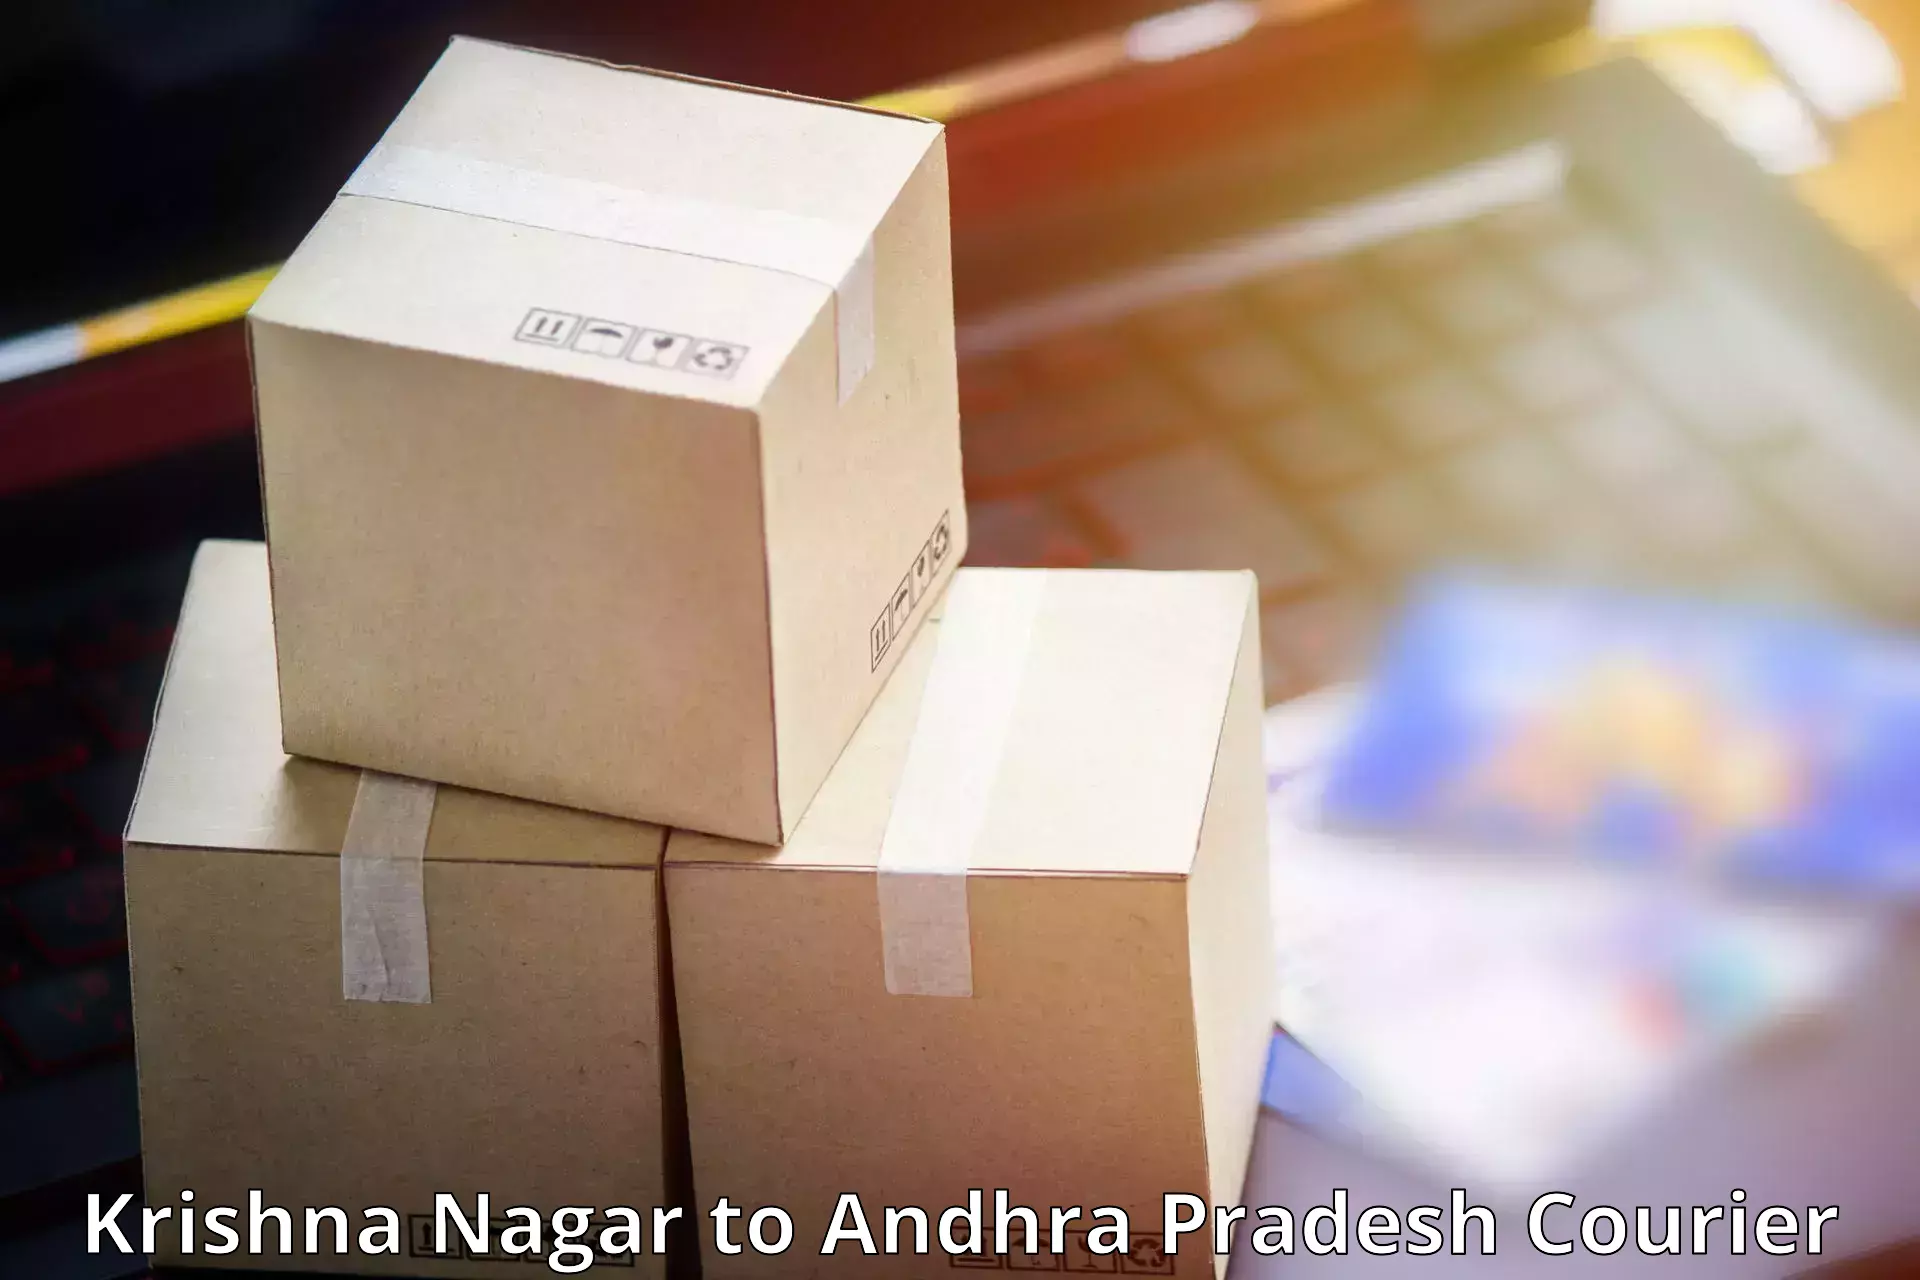 High-capacity parcel service Krishna Nagar to Banaganapalli